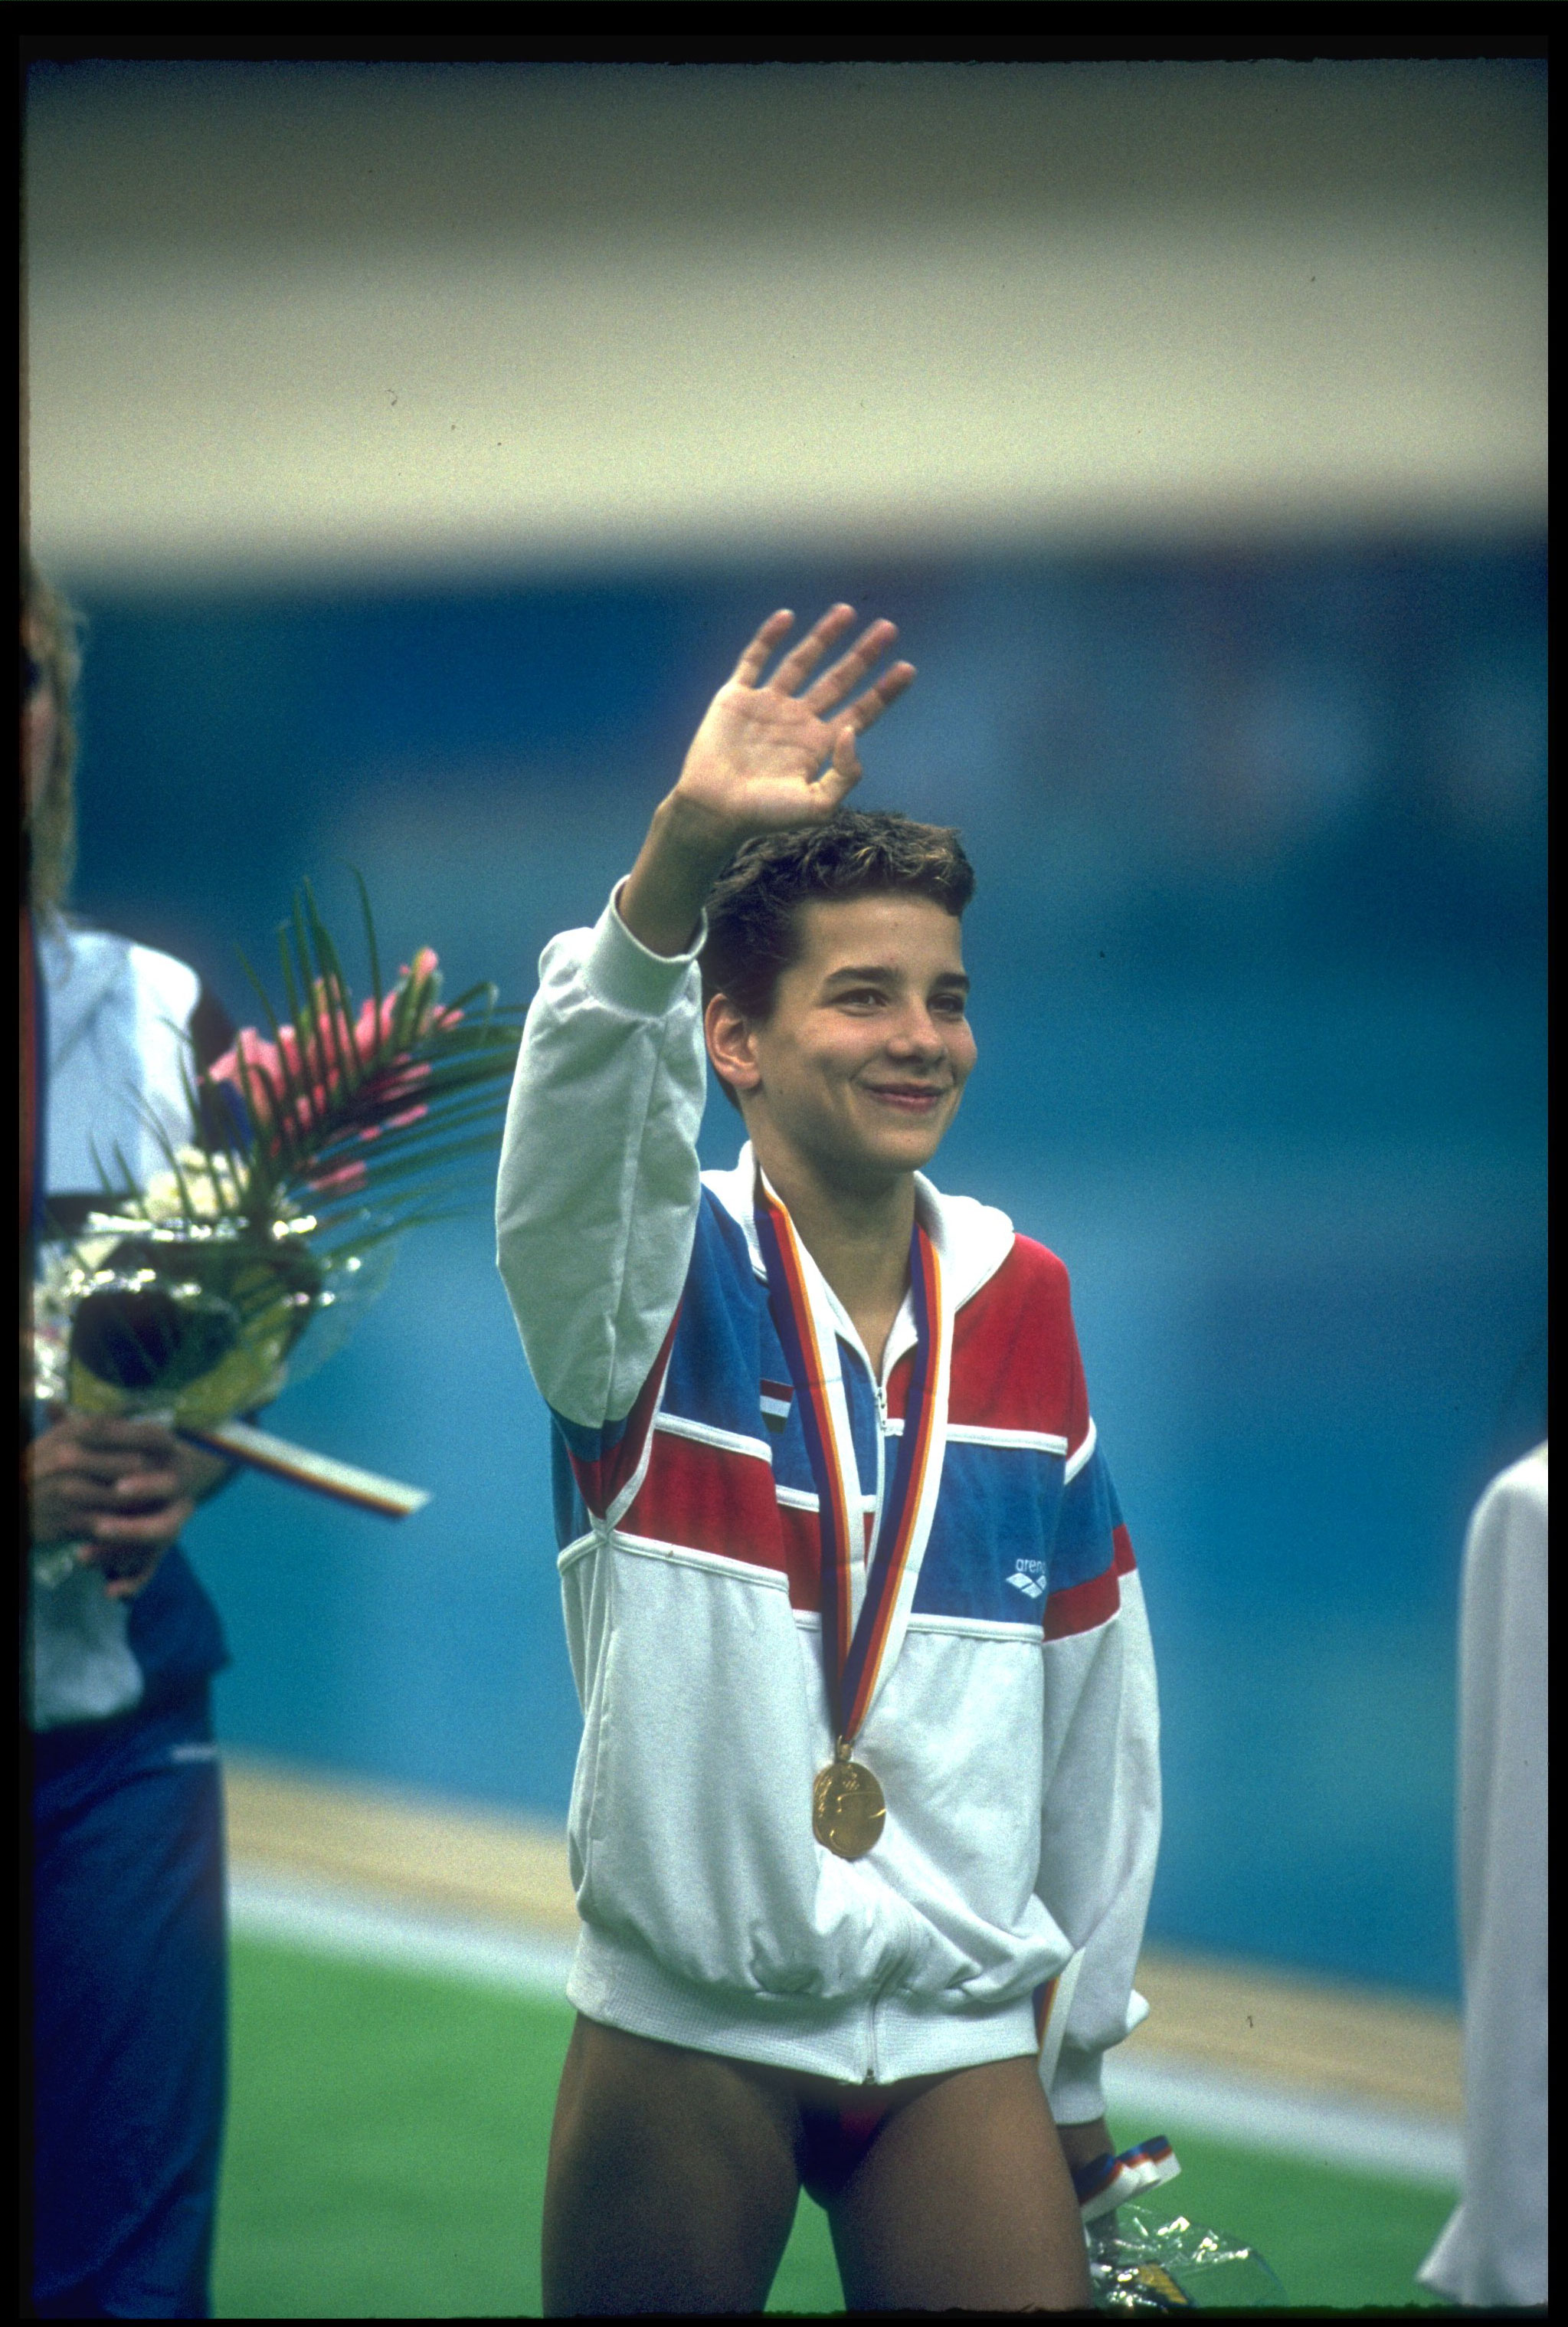 1988-ban egy magyar lány történelmet írt azzal, hogy 14 évesen olimpiai bajnok lett úszásban. Kiről van szó?